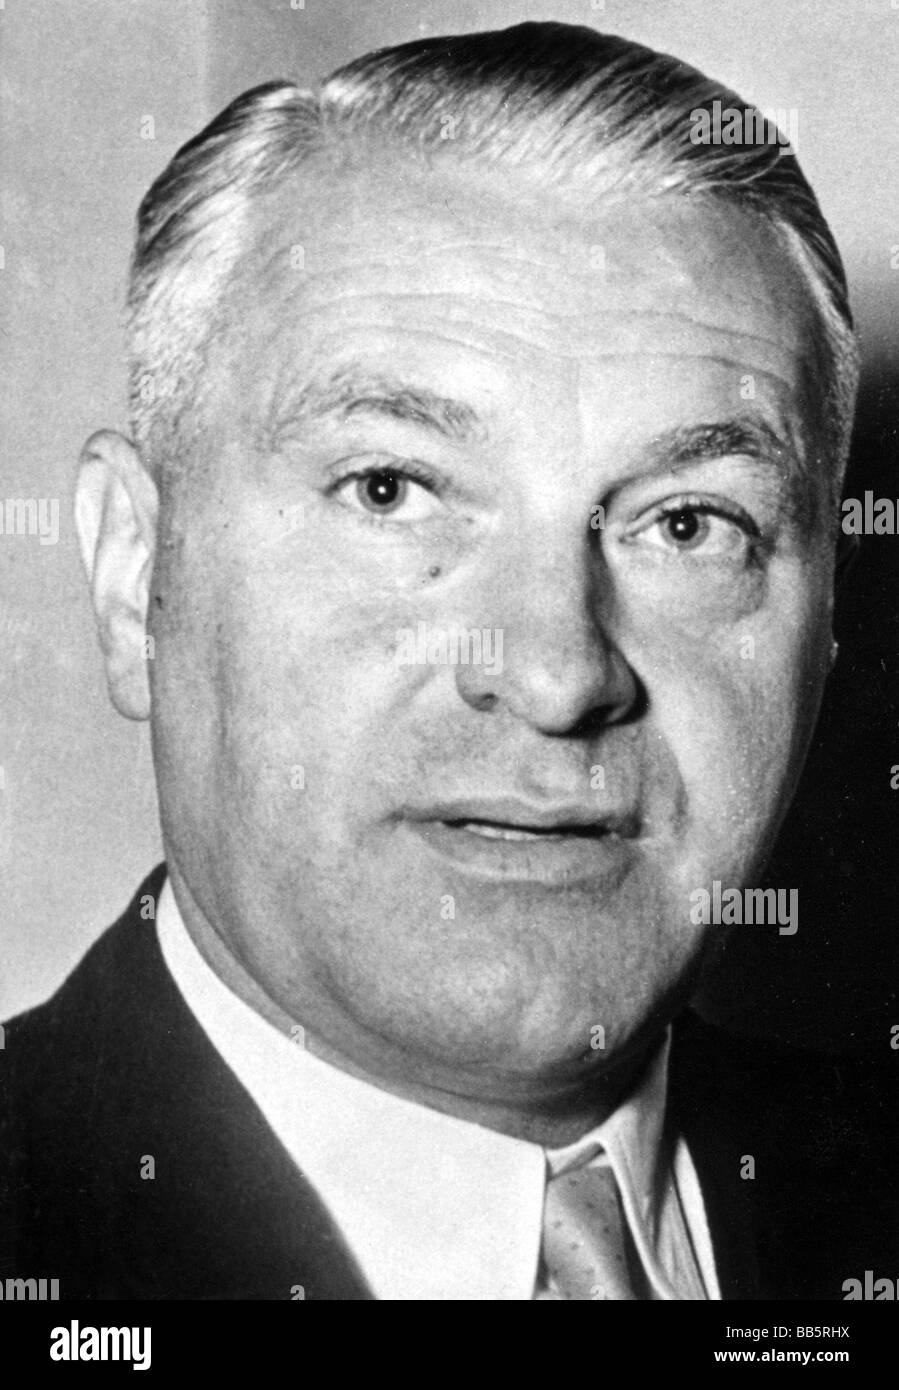 Eberhard, Rudolf, 1.11.1914 - 26.12.1998, politico tedesco (CSU), ministro delle Finanze bavarese 1957 - 1964, ritratto, 1957, , Foto Stock